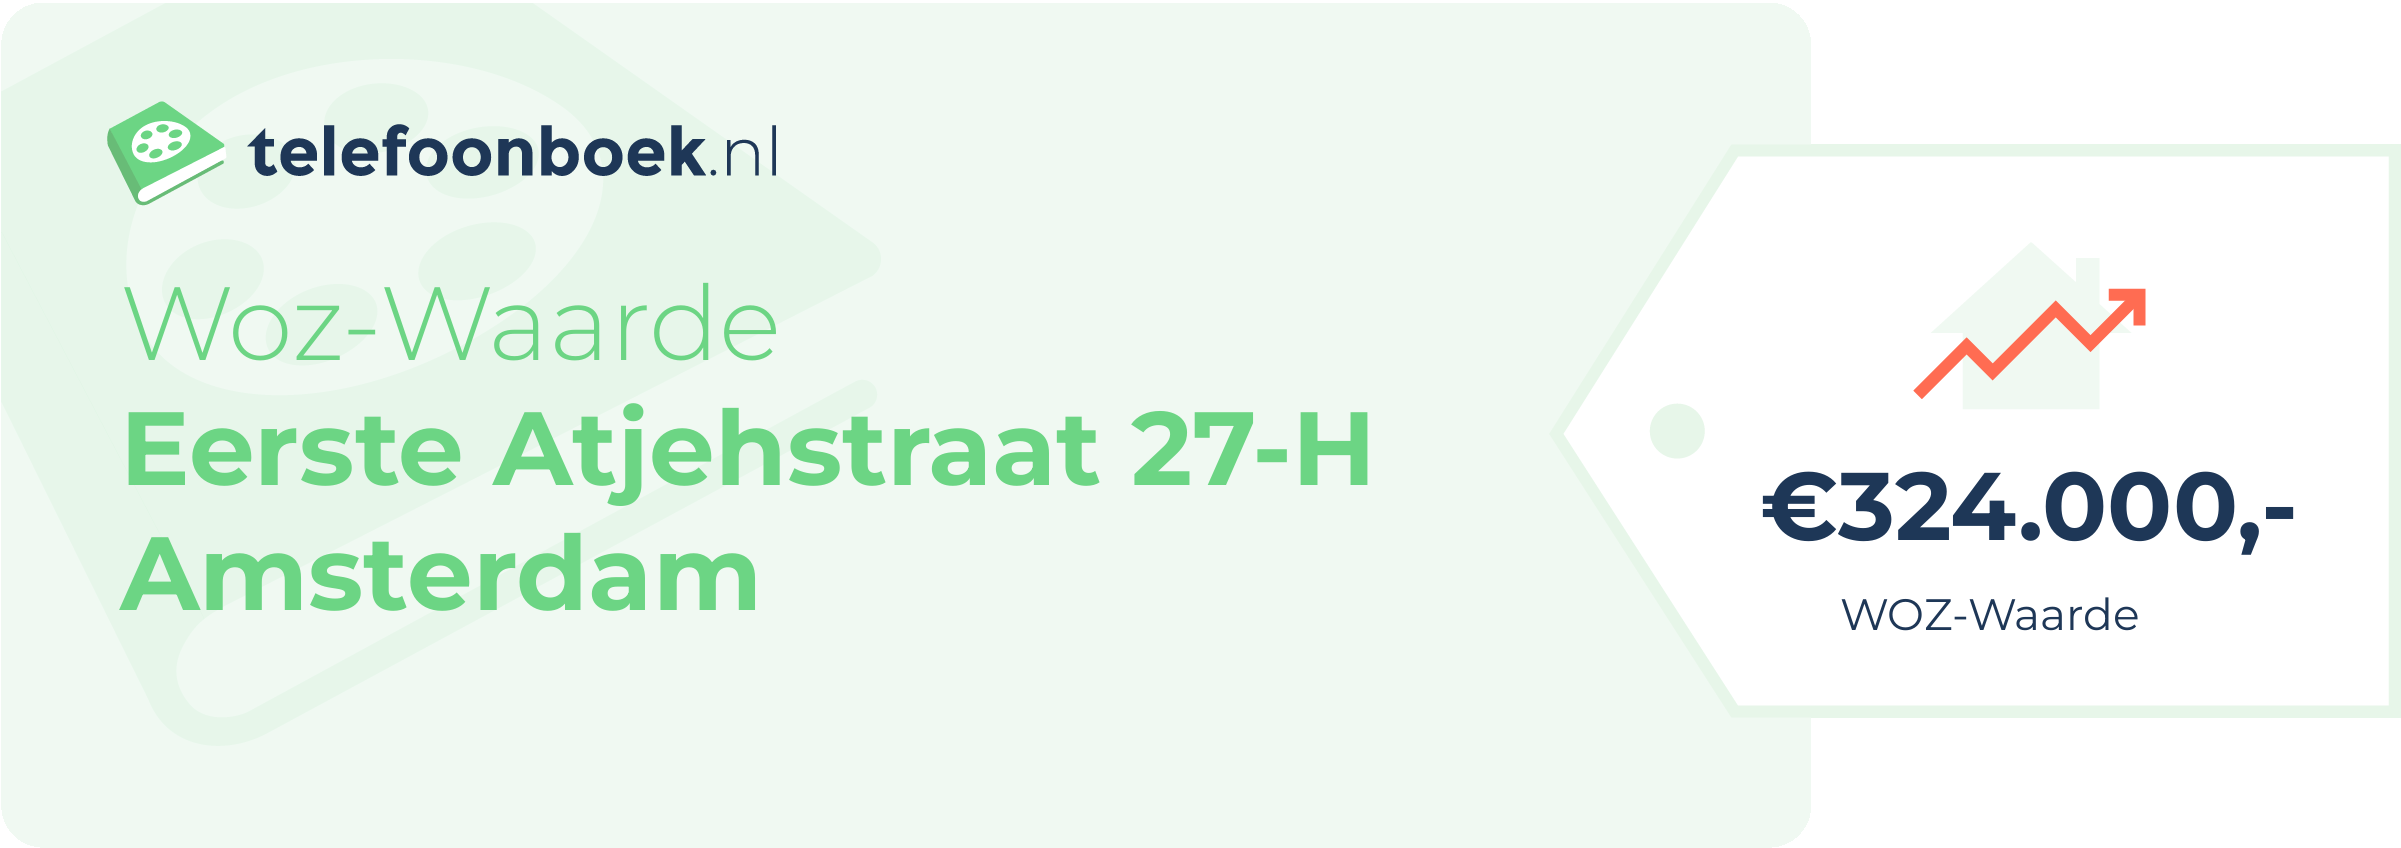 WOZ-waarde Eerste Atjehstraat 27-H Amsterdam